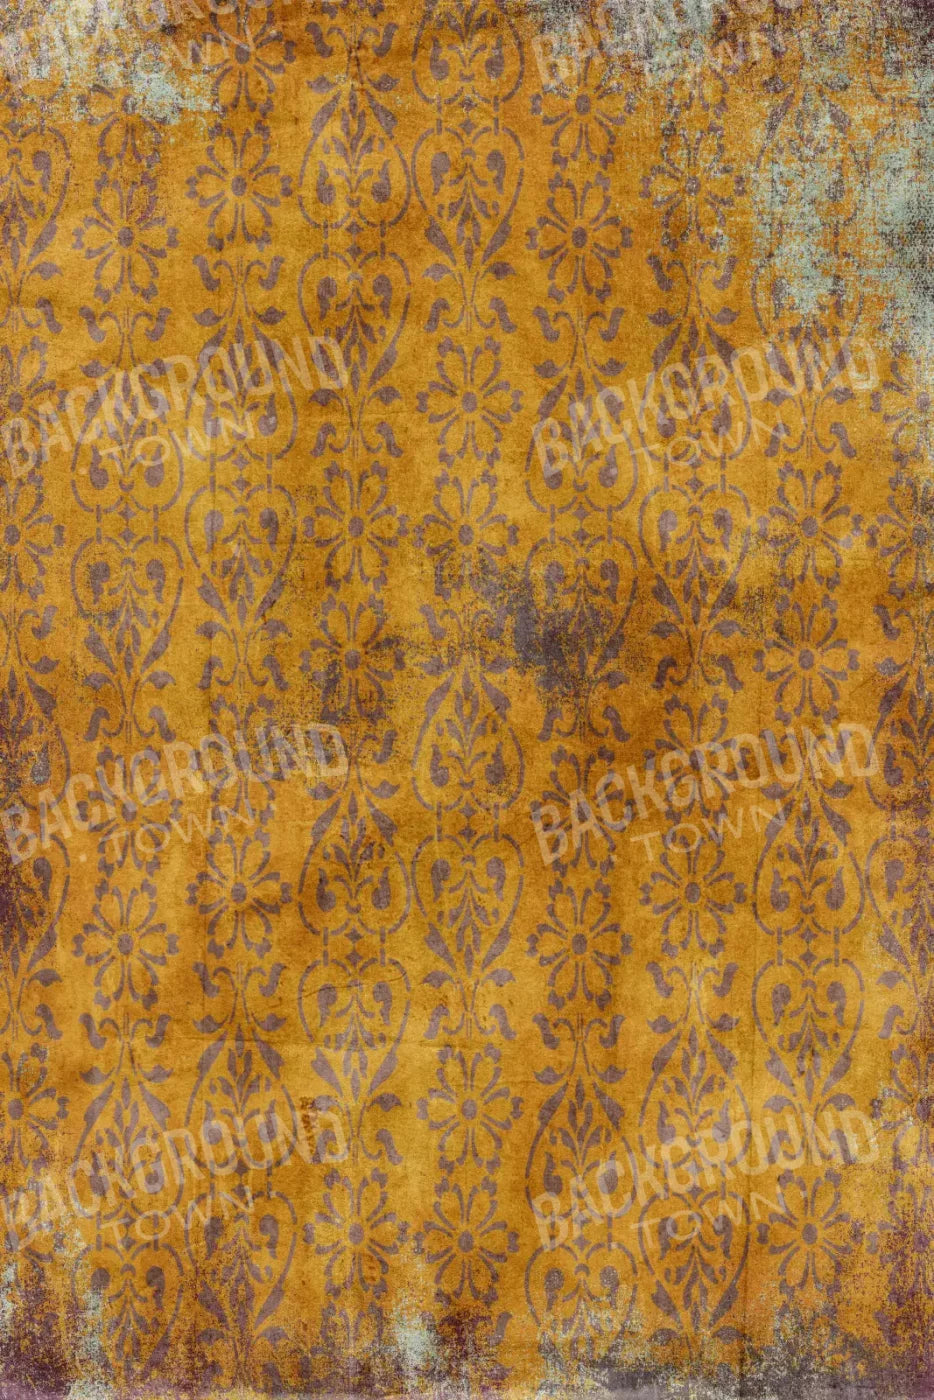 Golden Harvest 4X5 Rubbermat Floor ( 48 X 60 Inch ) Backdrop